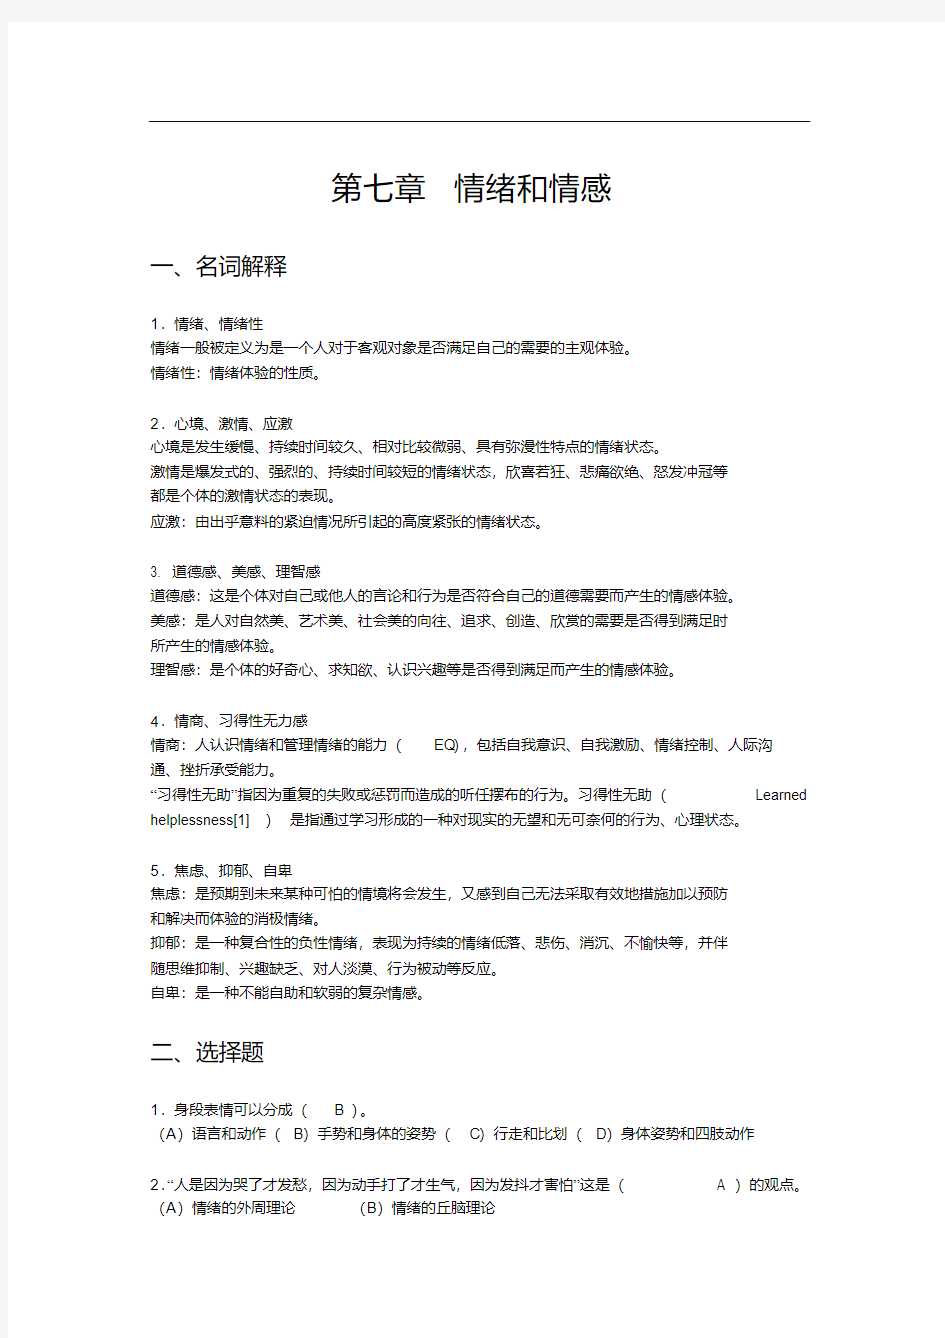 《心理学基础》练习题答案(七).pdf